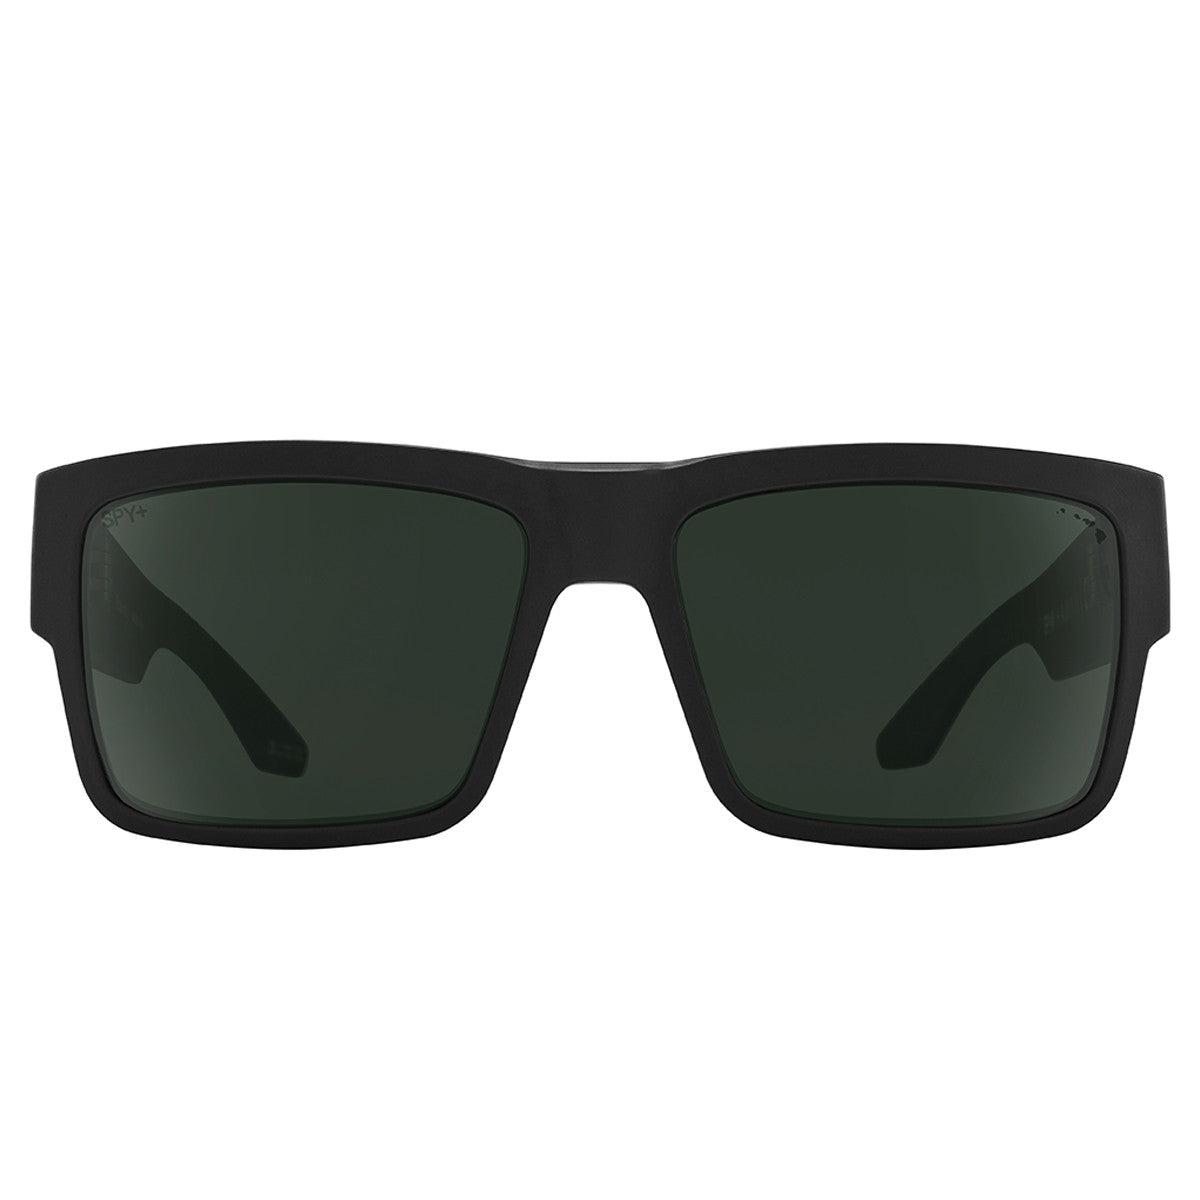 Spy Cyrus Sunglasses  Hawaii 58-17-145 M-L 54-61